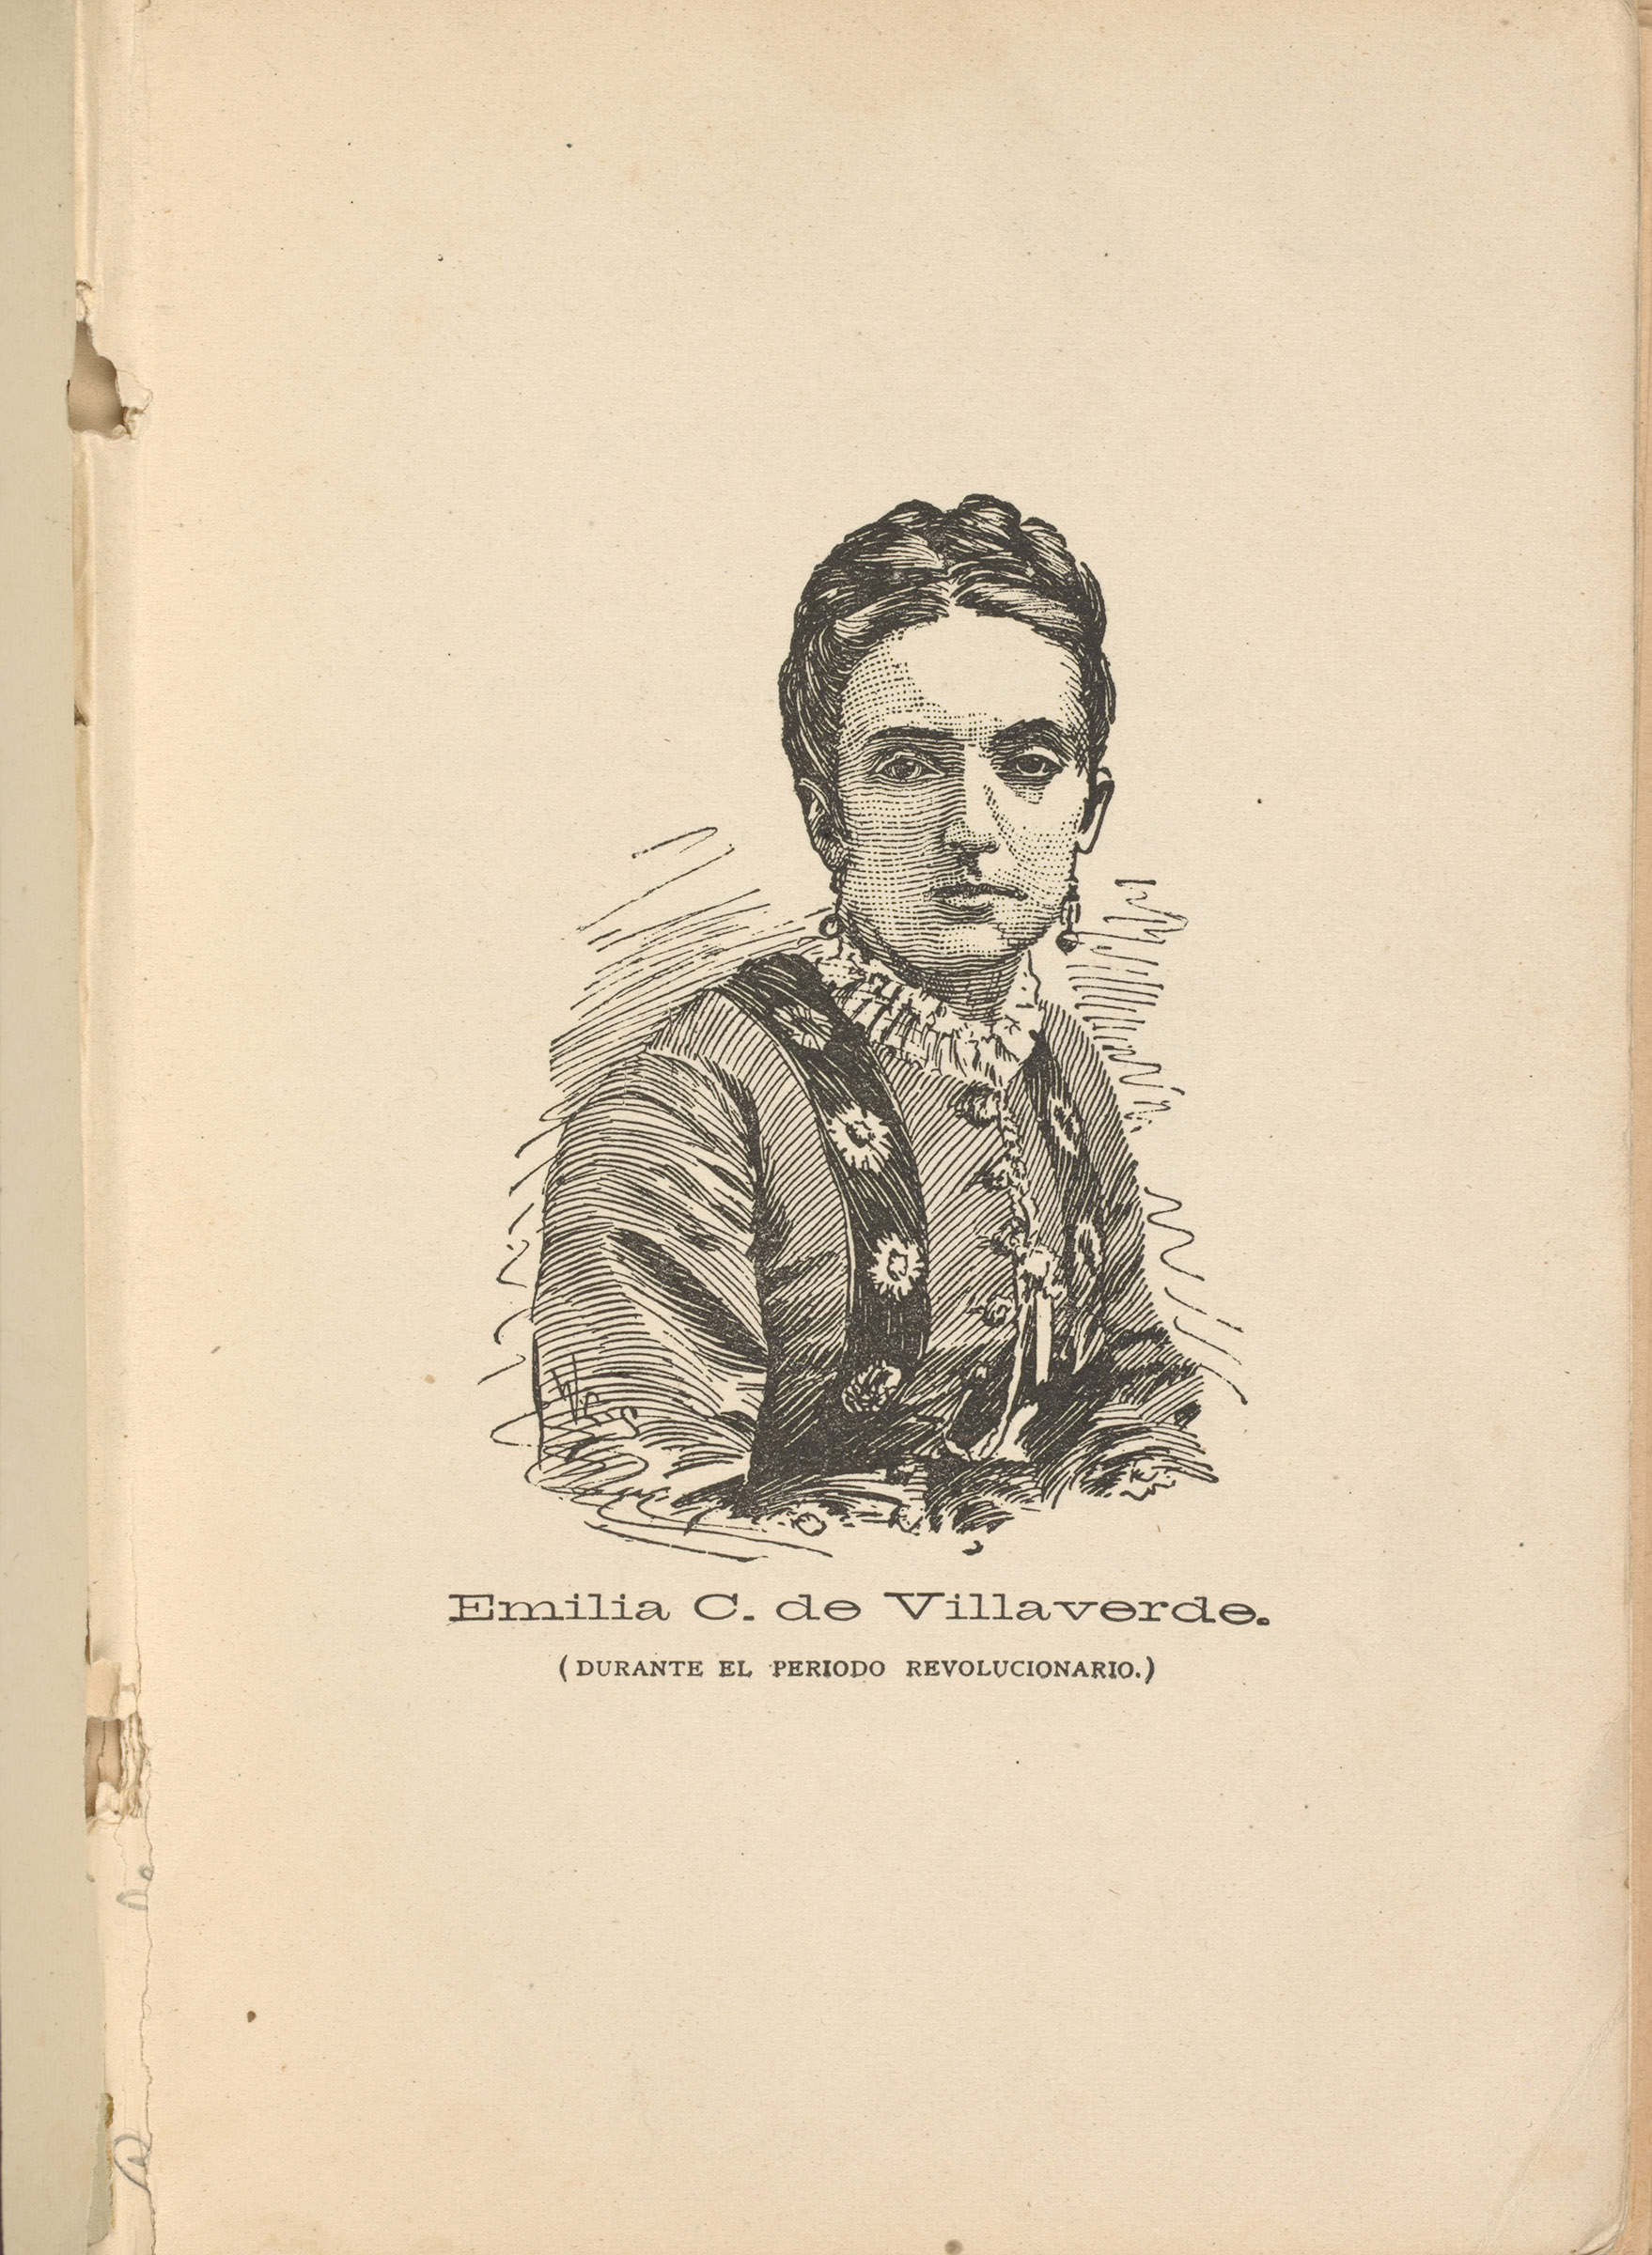 Portrait of Emilia Casanova de Villaverde, 1874. (The New York Public Library)